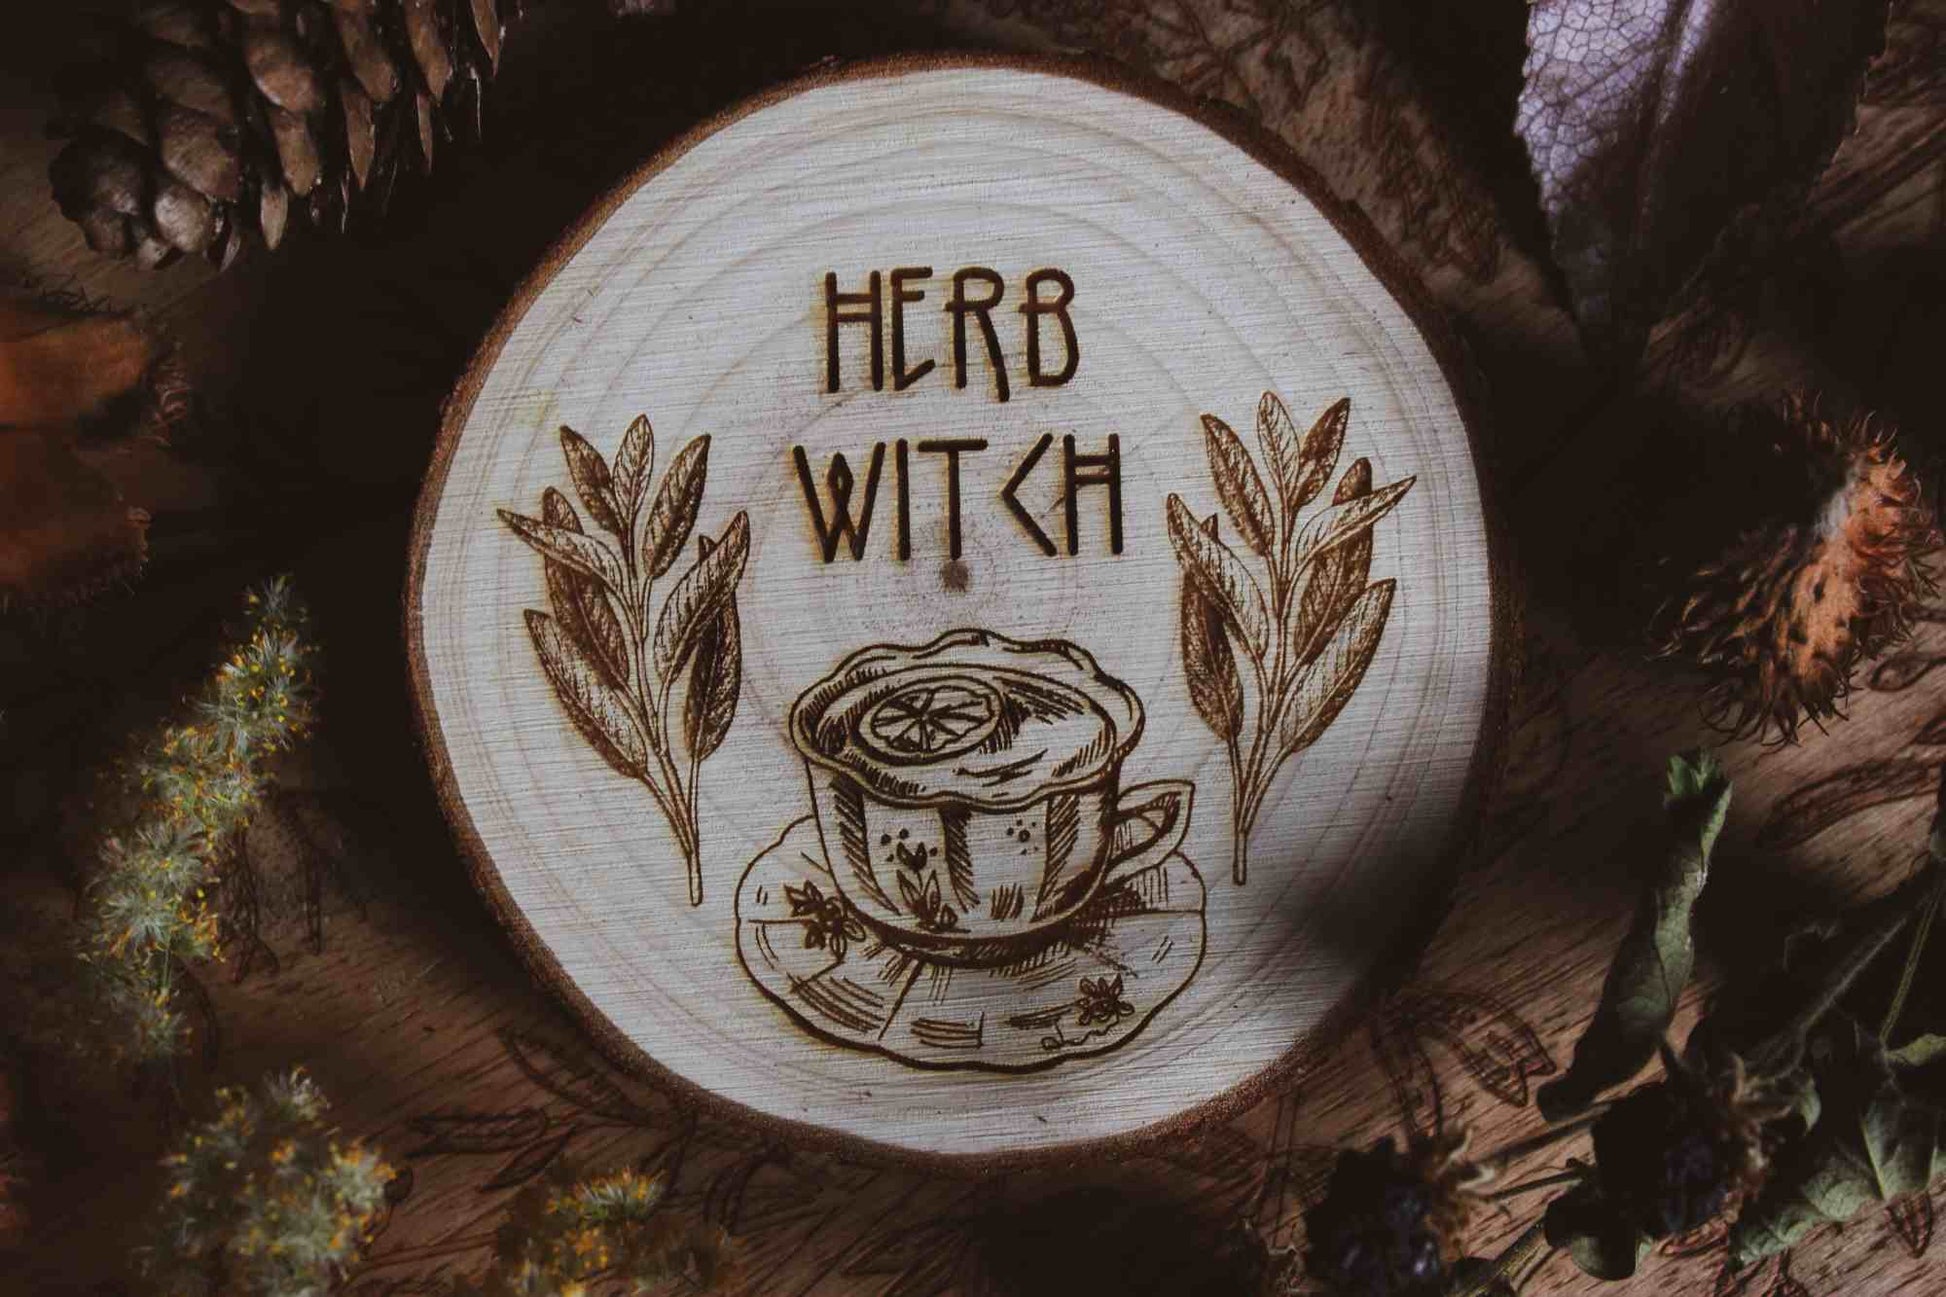 Wandbild aus Holz "Herb Witch" - Dieses Bild zeigt eine kunstvoll gravierte Holzscheibe mit der Inschrift “HERB WITCH”, umgeben von einer natürlichen und mystischen Atmosphäre. Die Gravur stellt eine Tasse Tee dar, die von zwei Zweigen mit Blättern flankiert wird, 